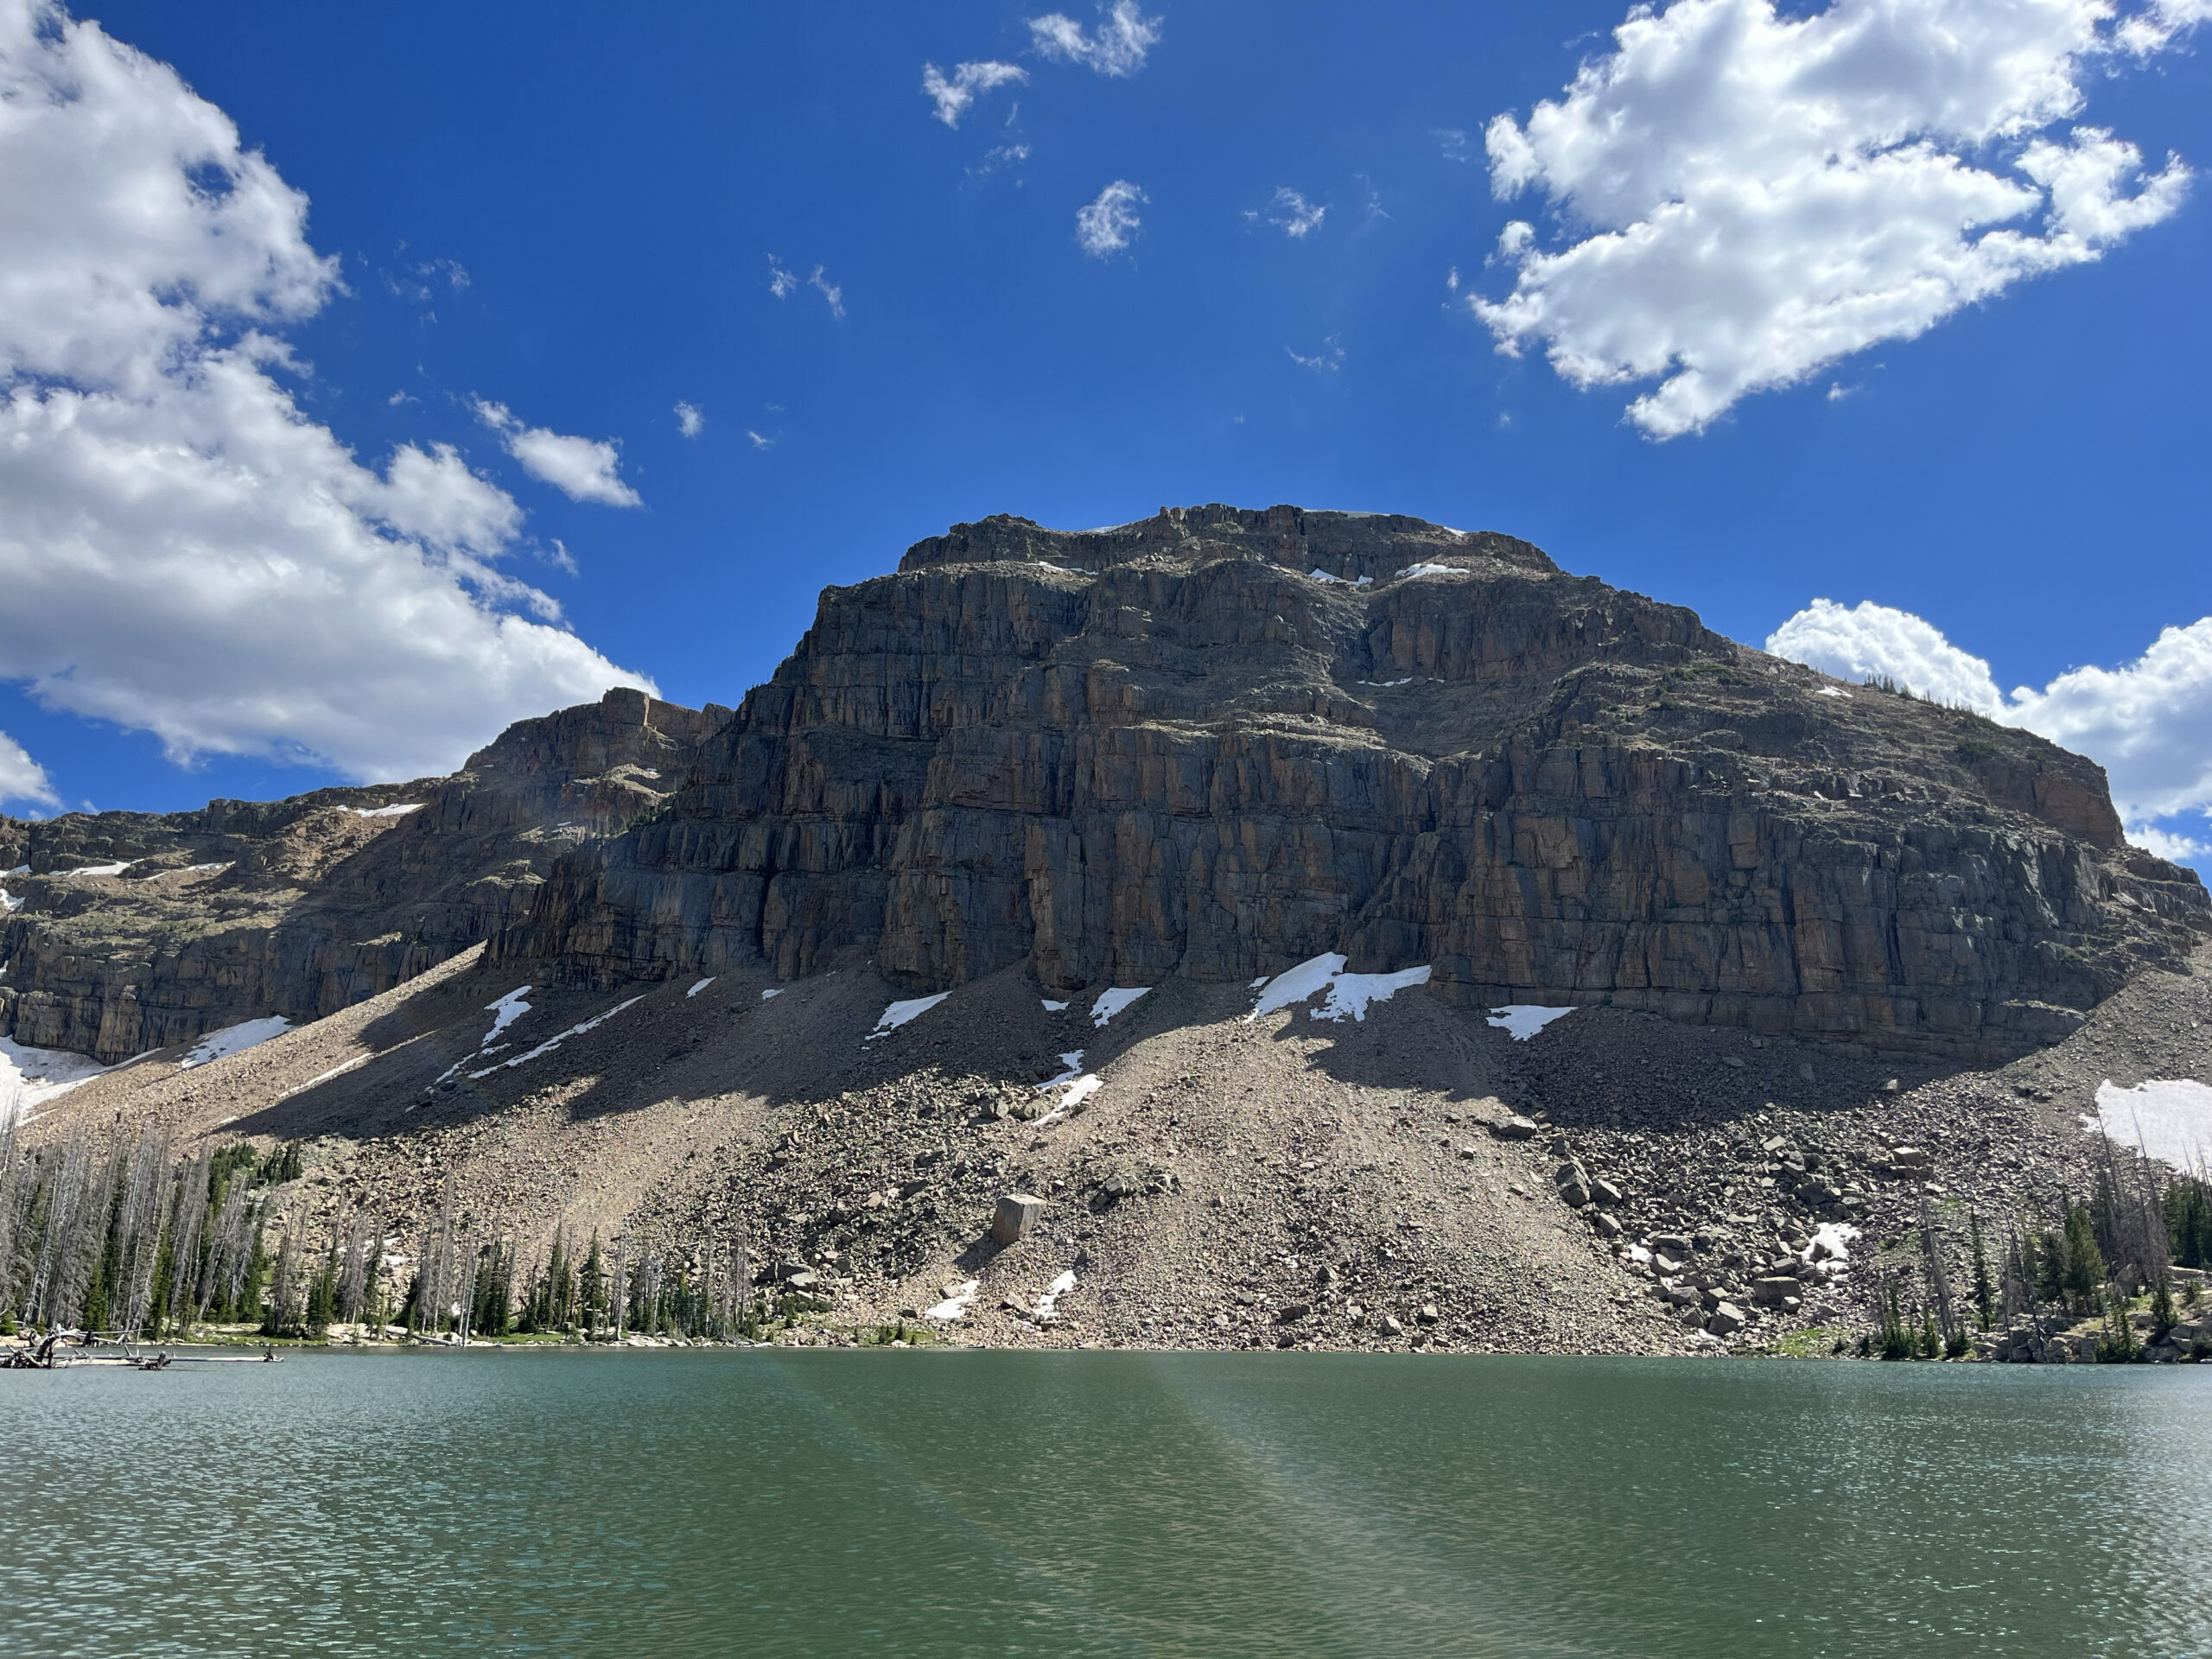 A mountain sits across a lake.